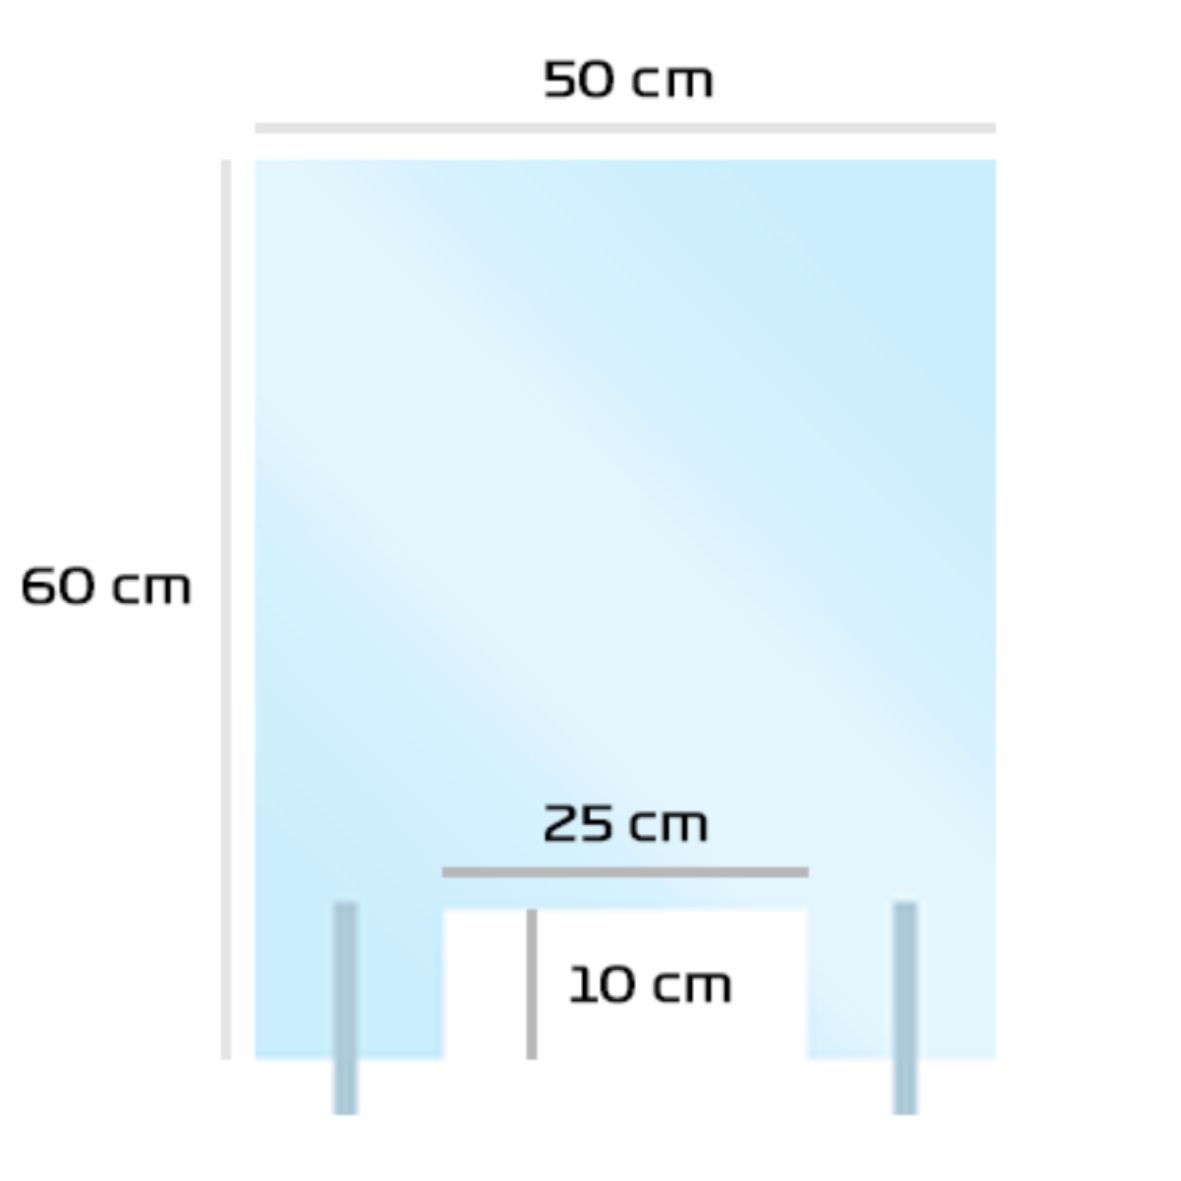 Mampara de protección de metacrilato transparente estandar ya fabricada de medida 50cm x 60cm especial mostradores